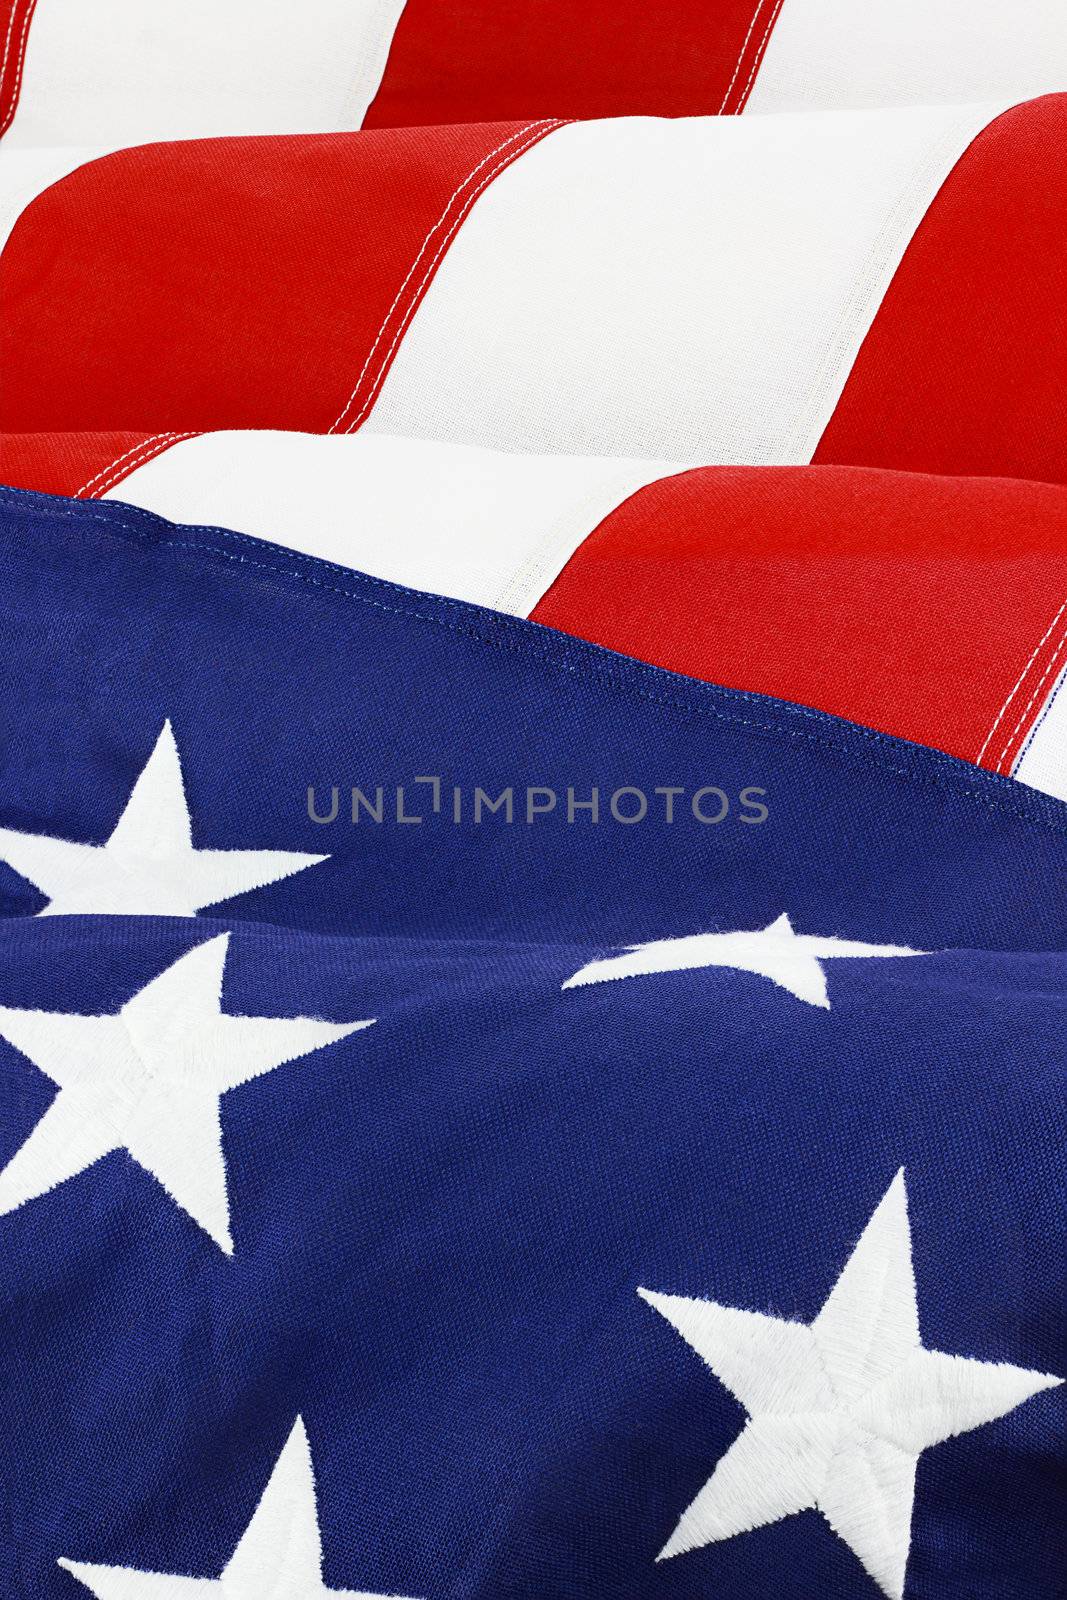 American Flag by StephanieFrey